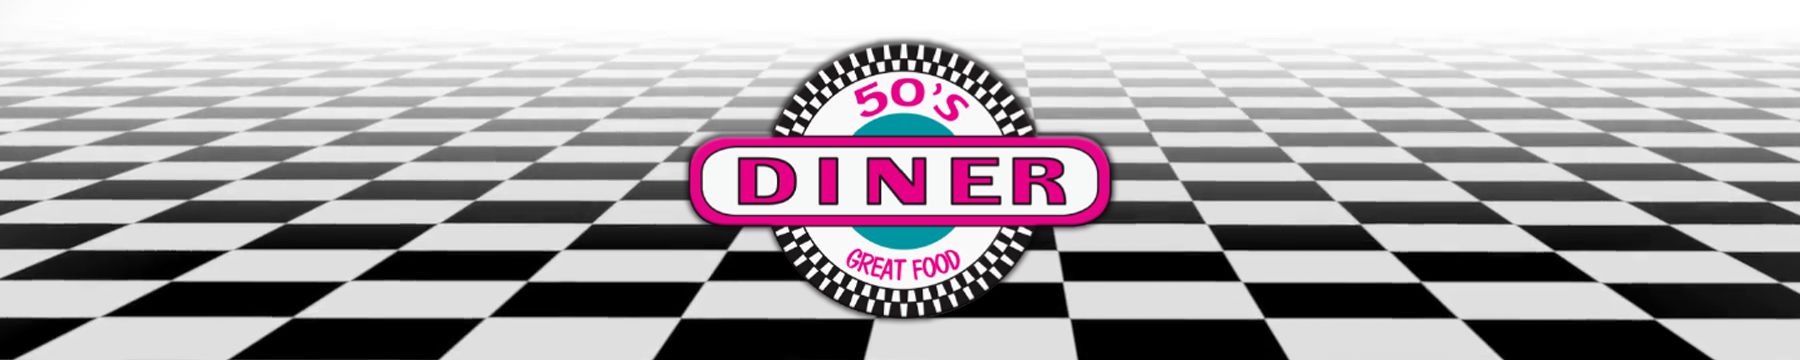 50s Diner